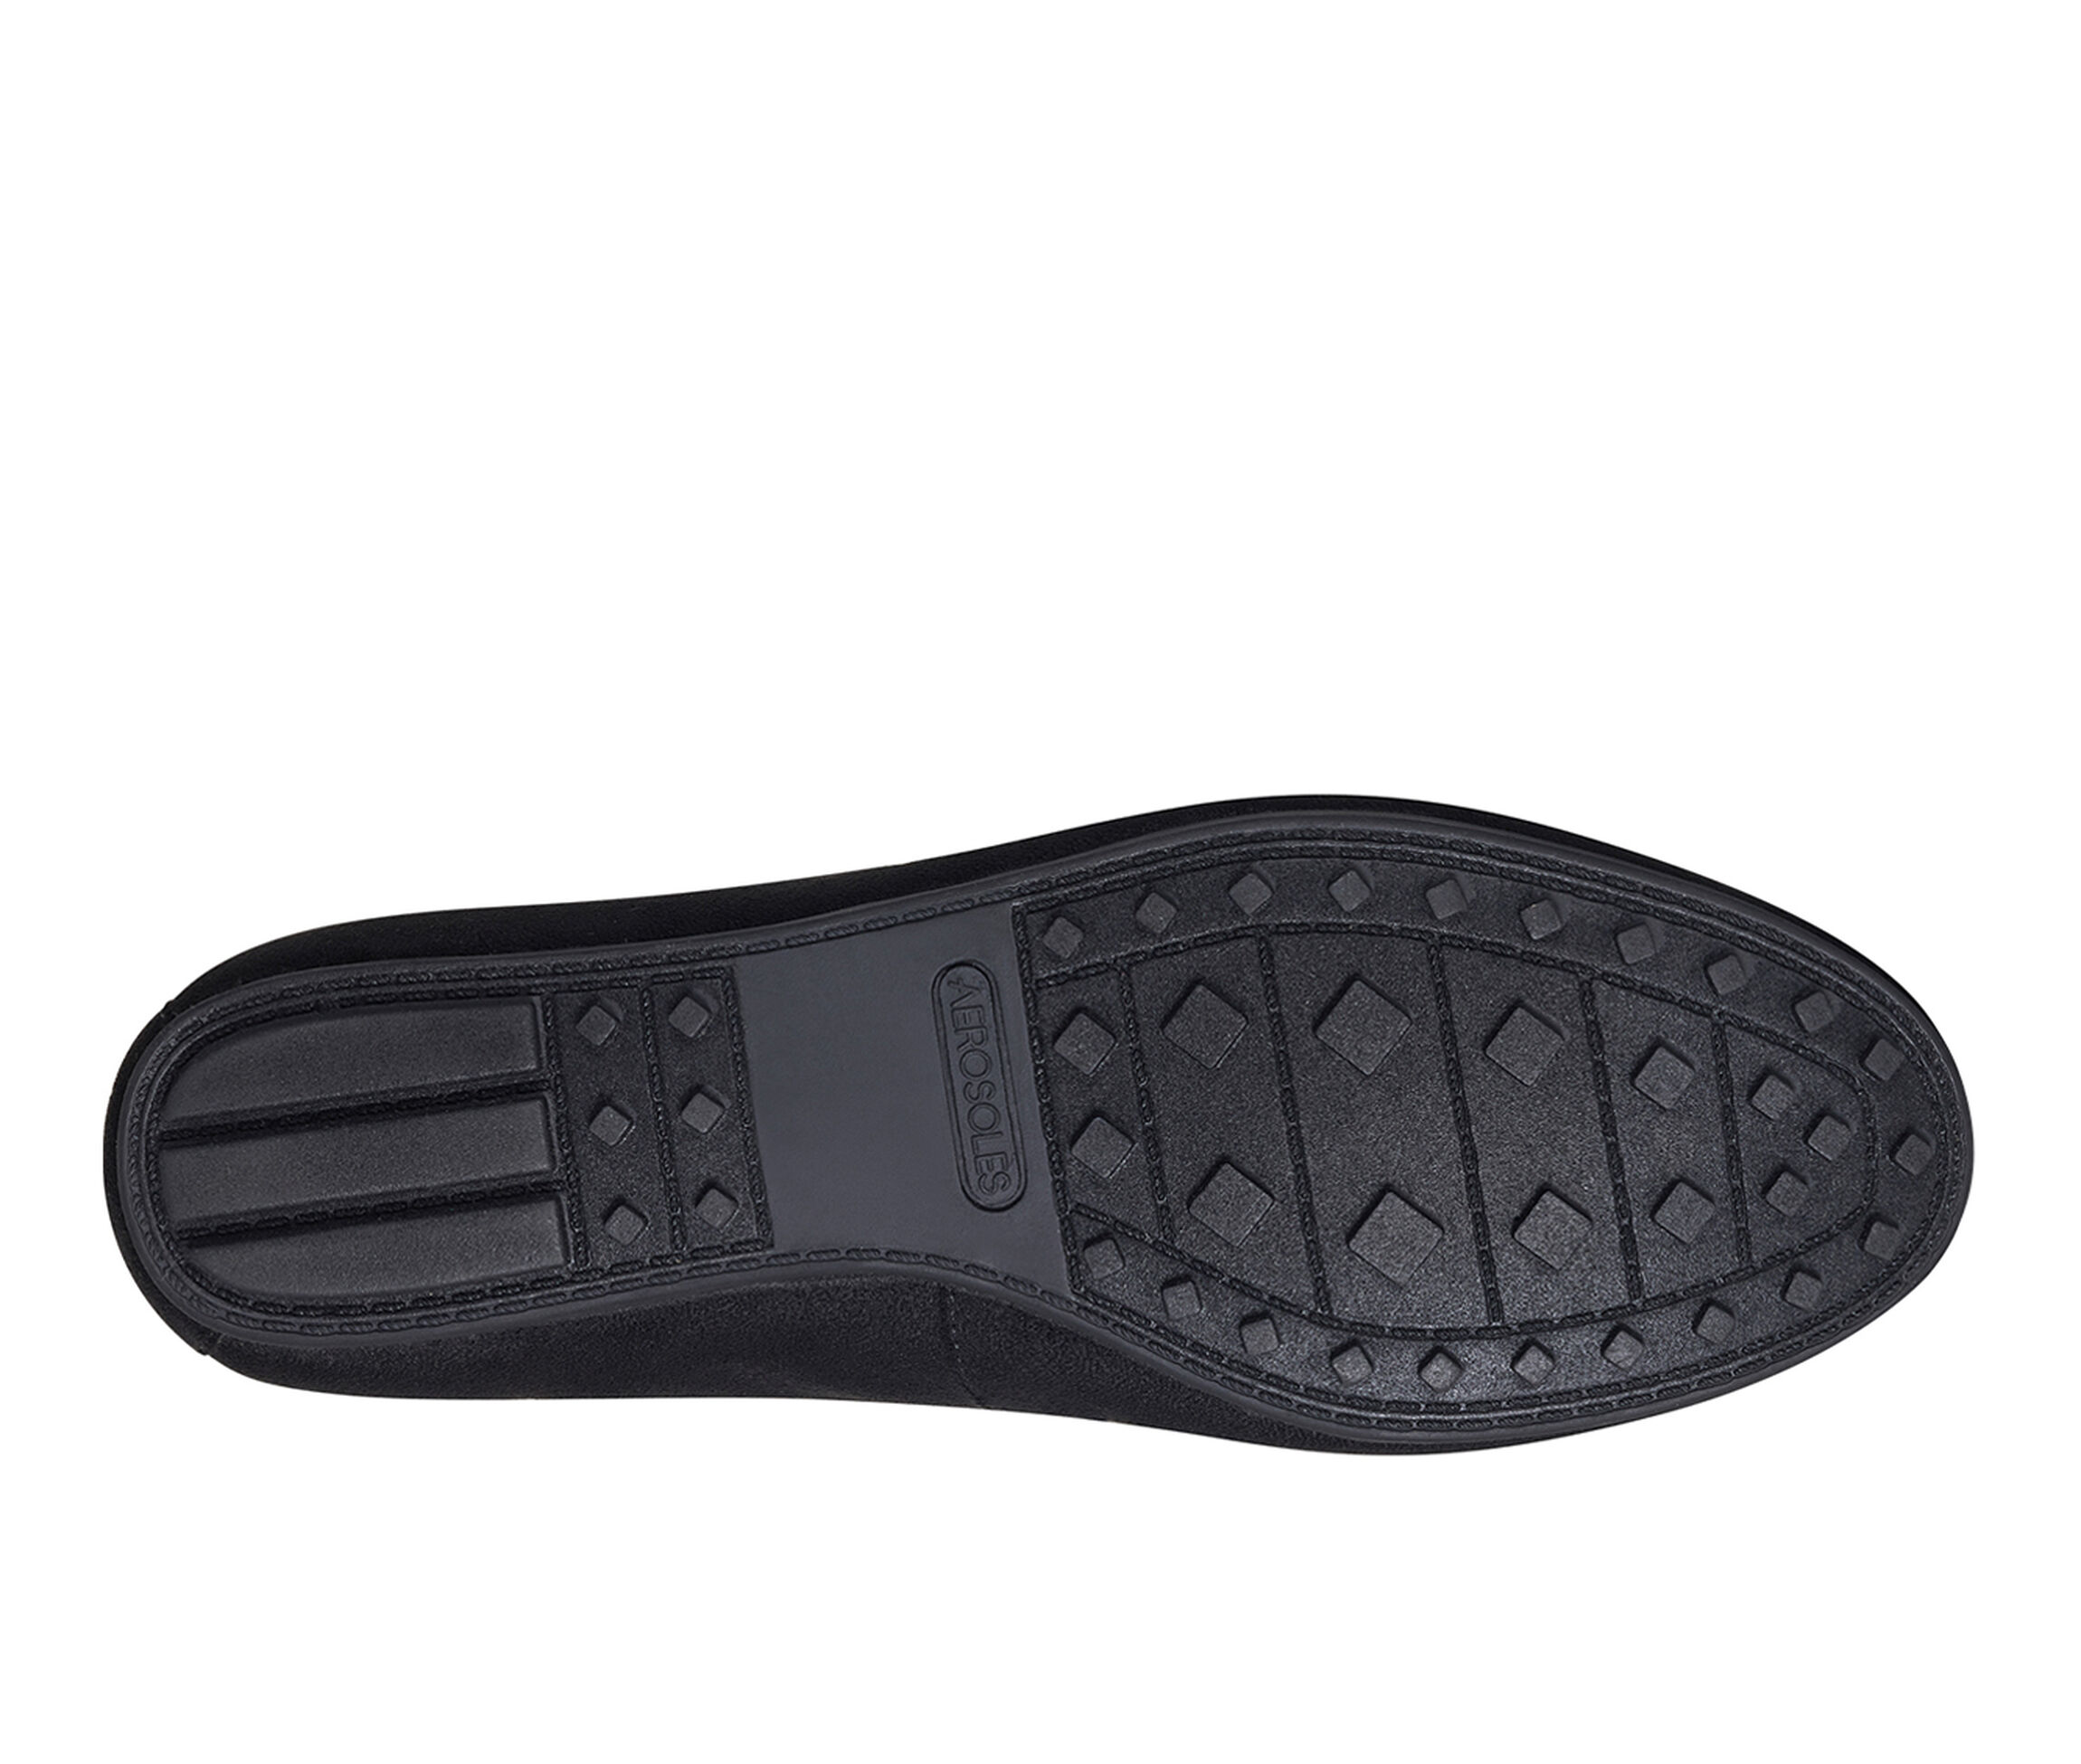 Aerosoles Shoes | Shoe Carnival